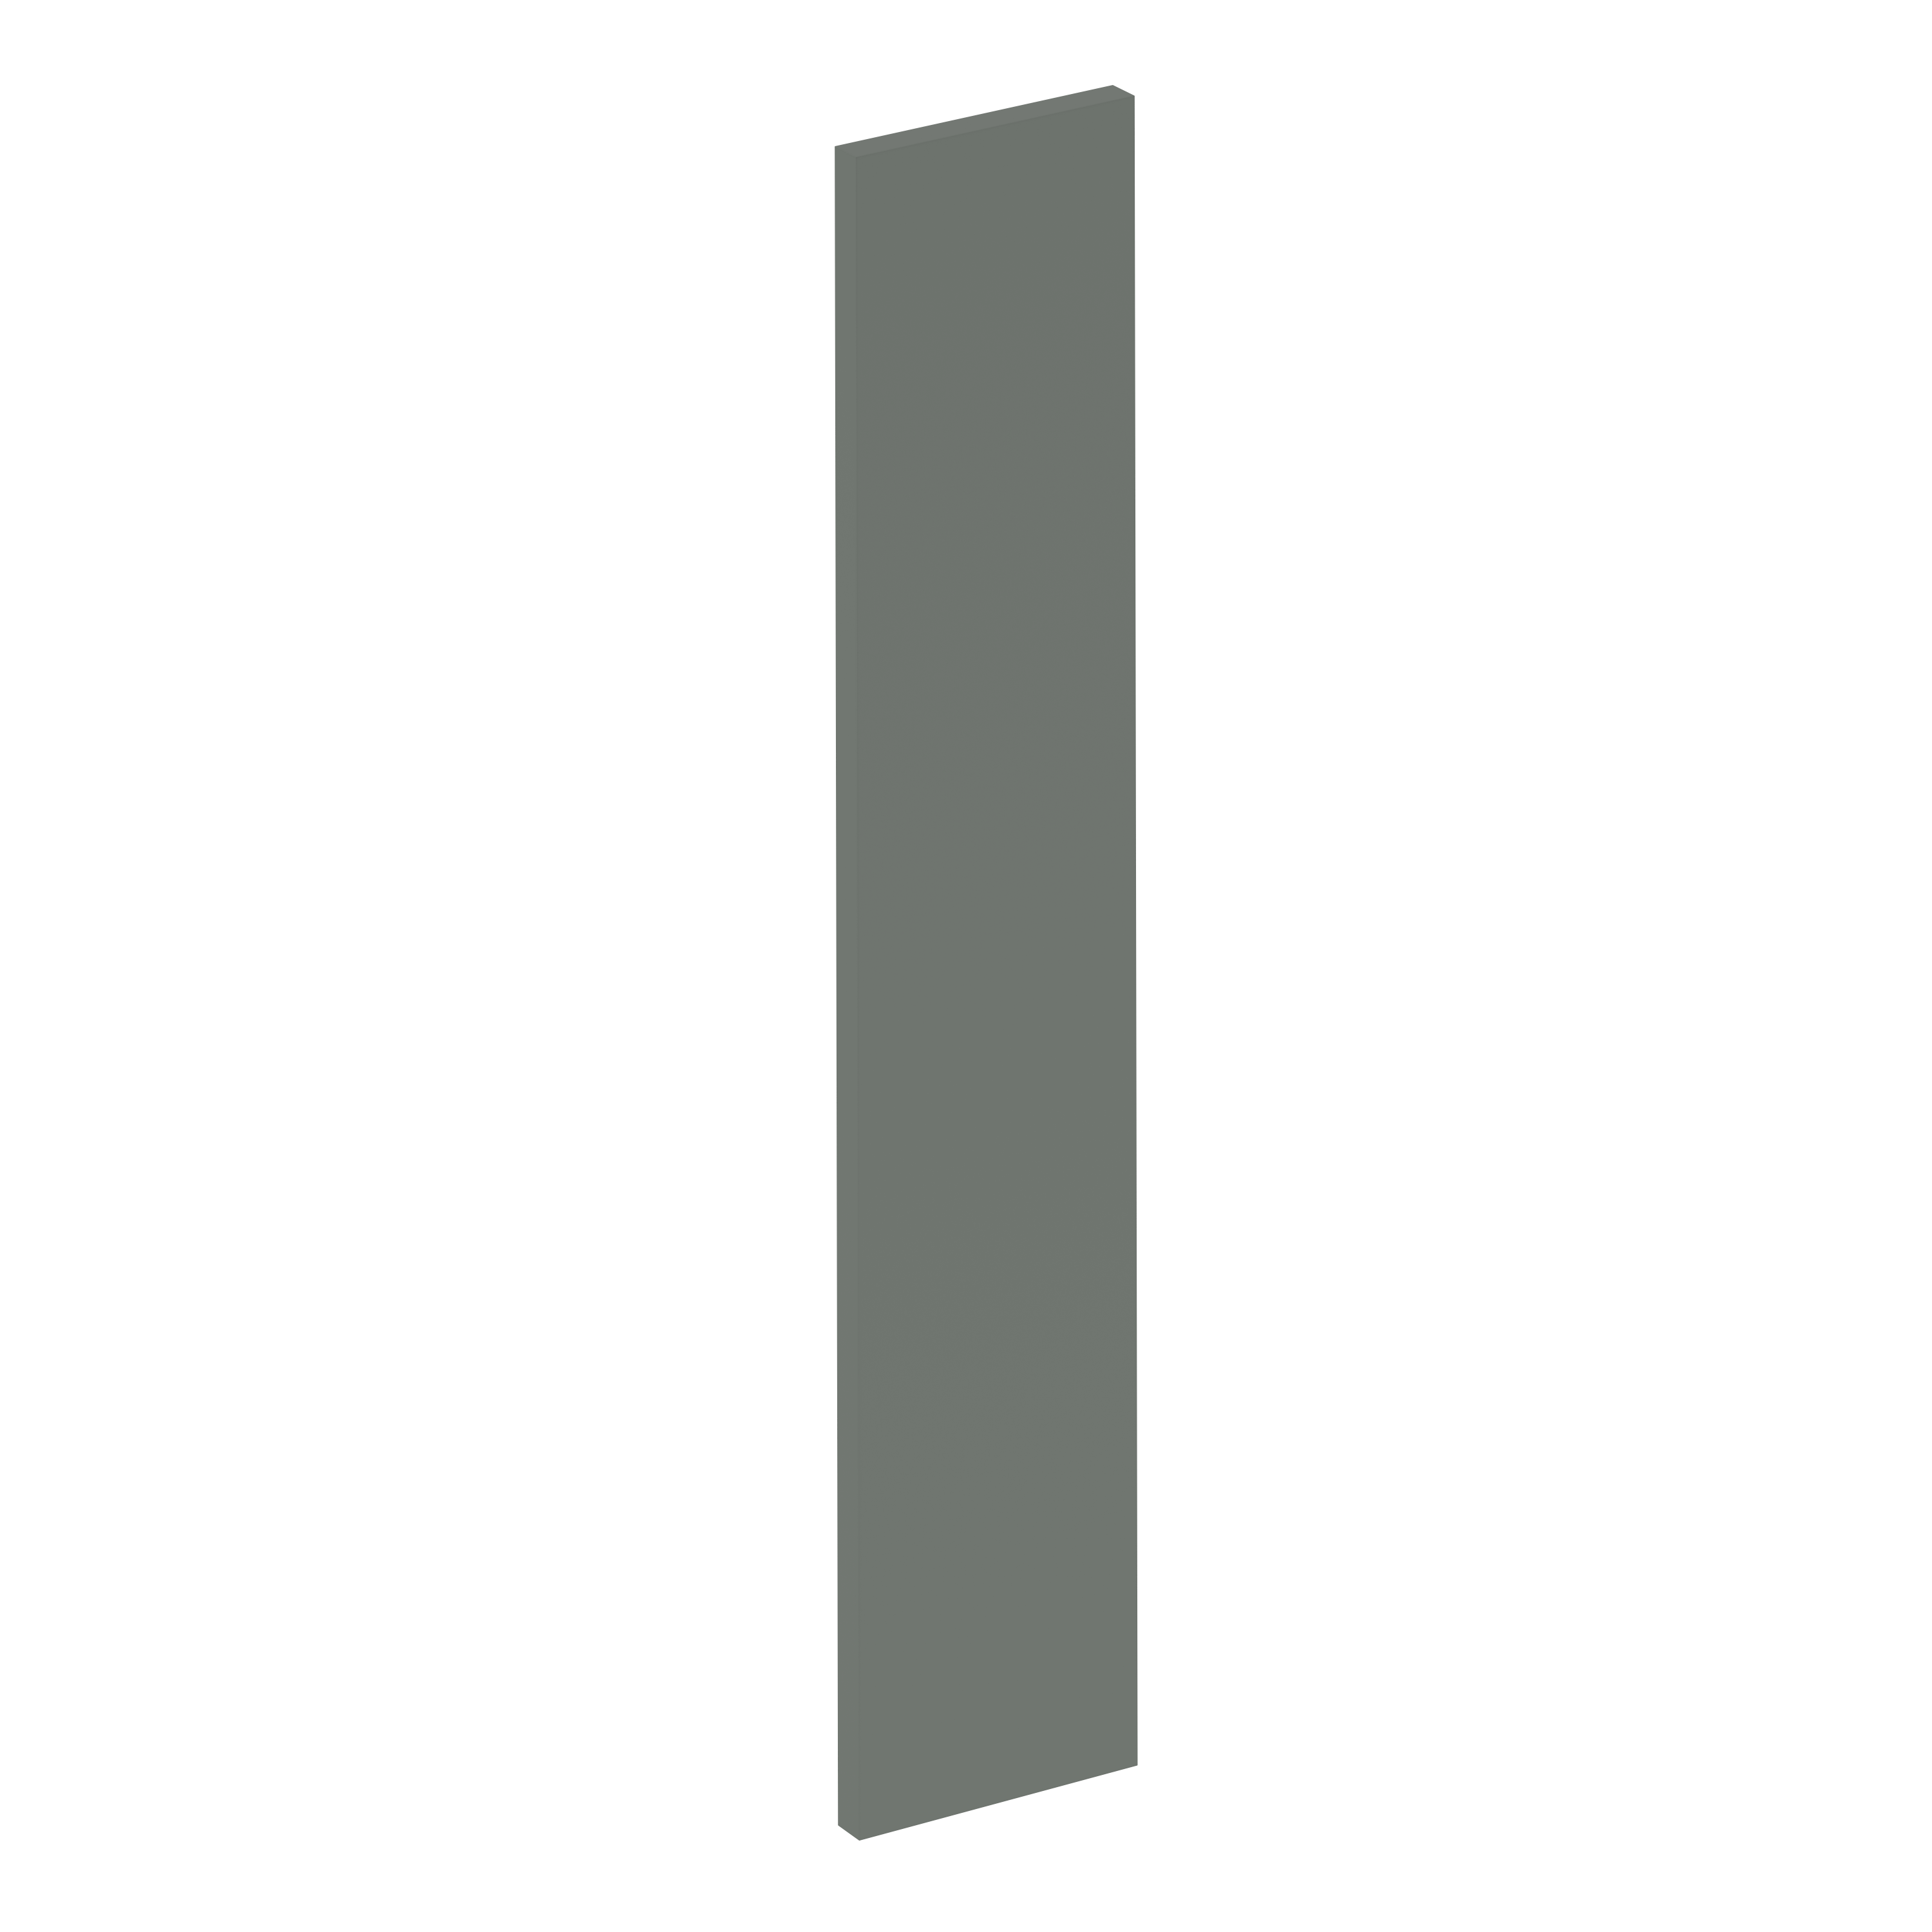 Puerta para mueble de cocina vienne verde mate h 76.8 x l 15 cm